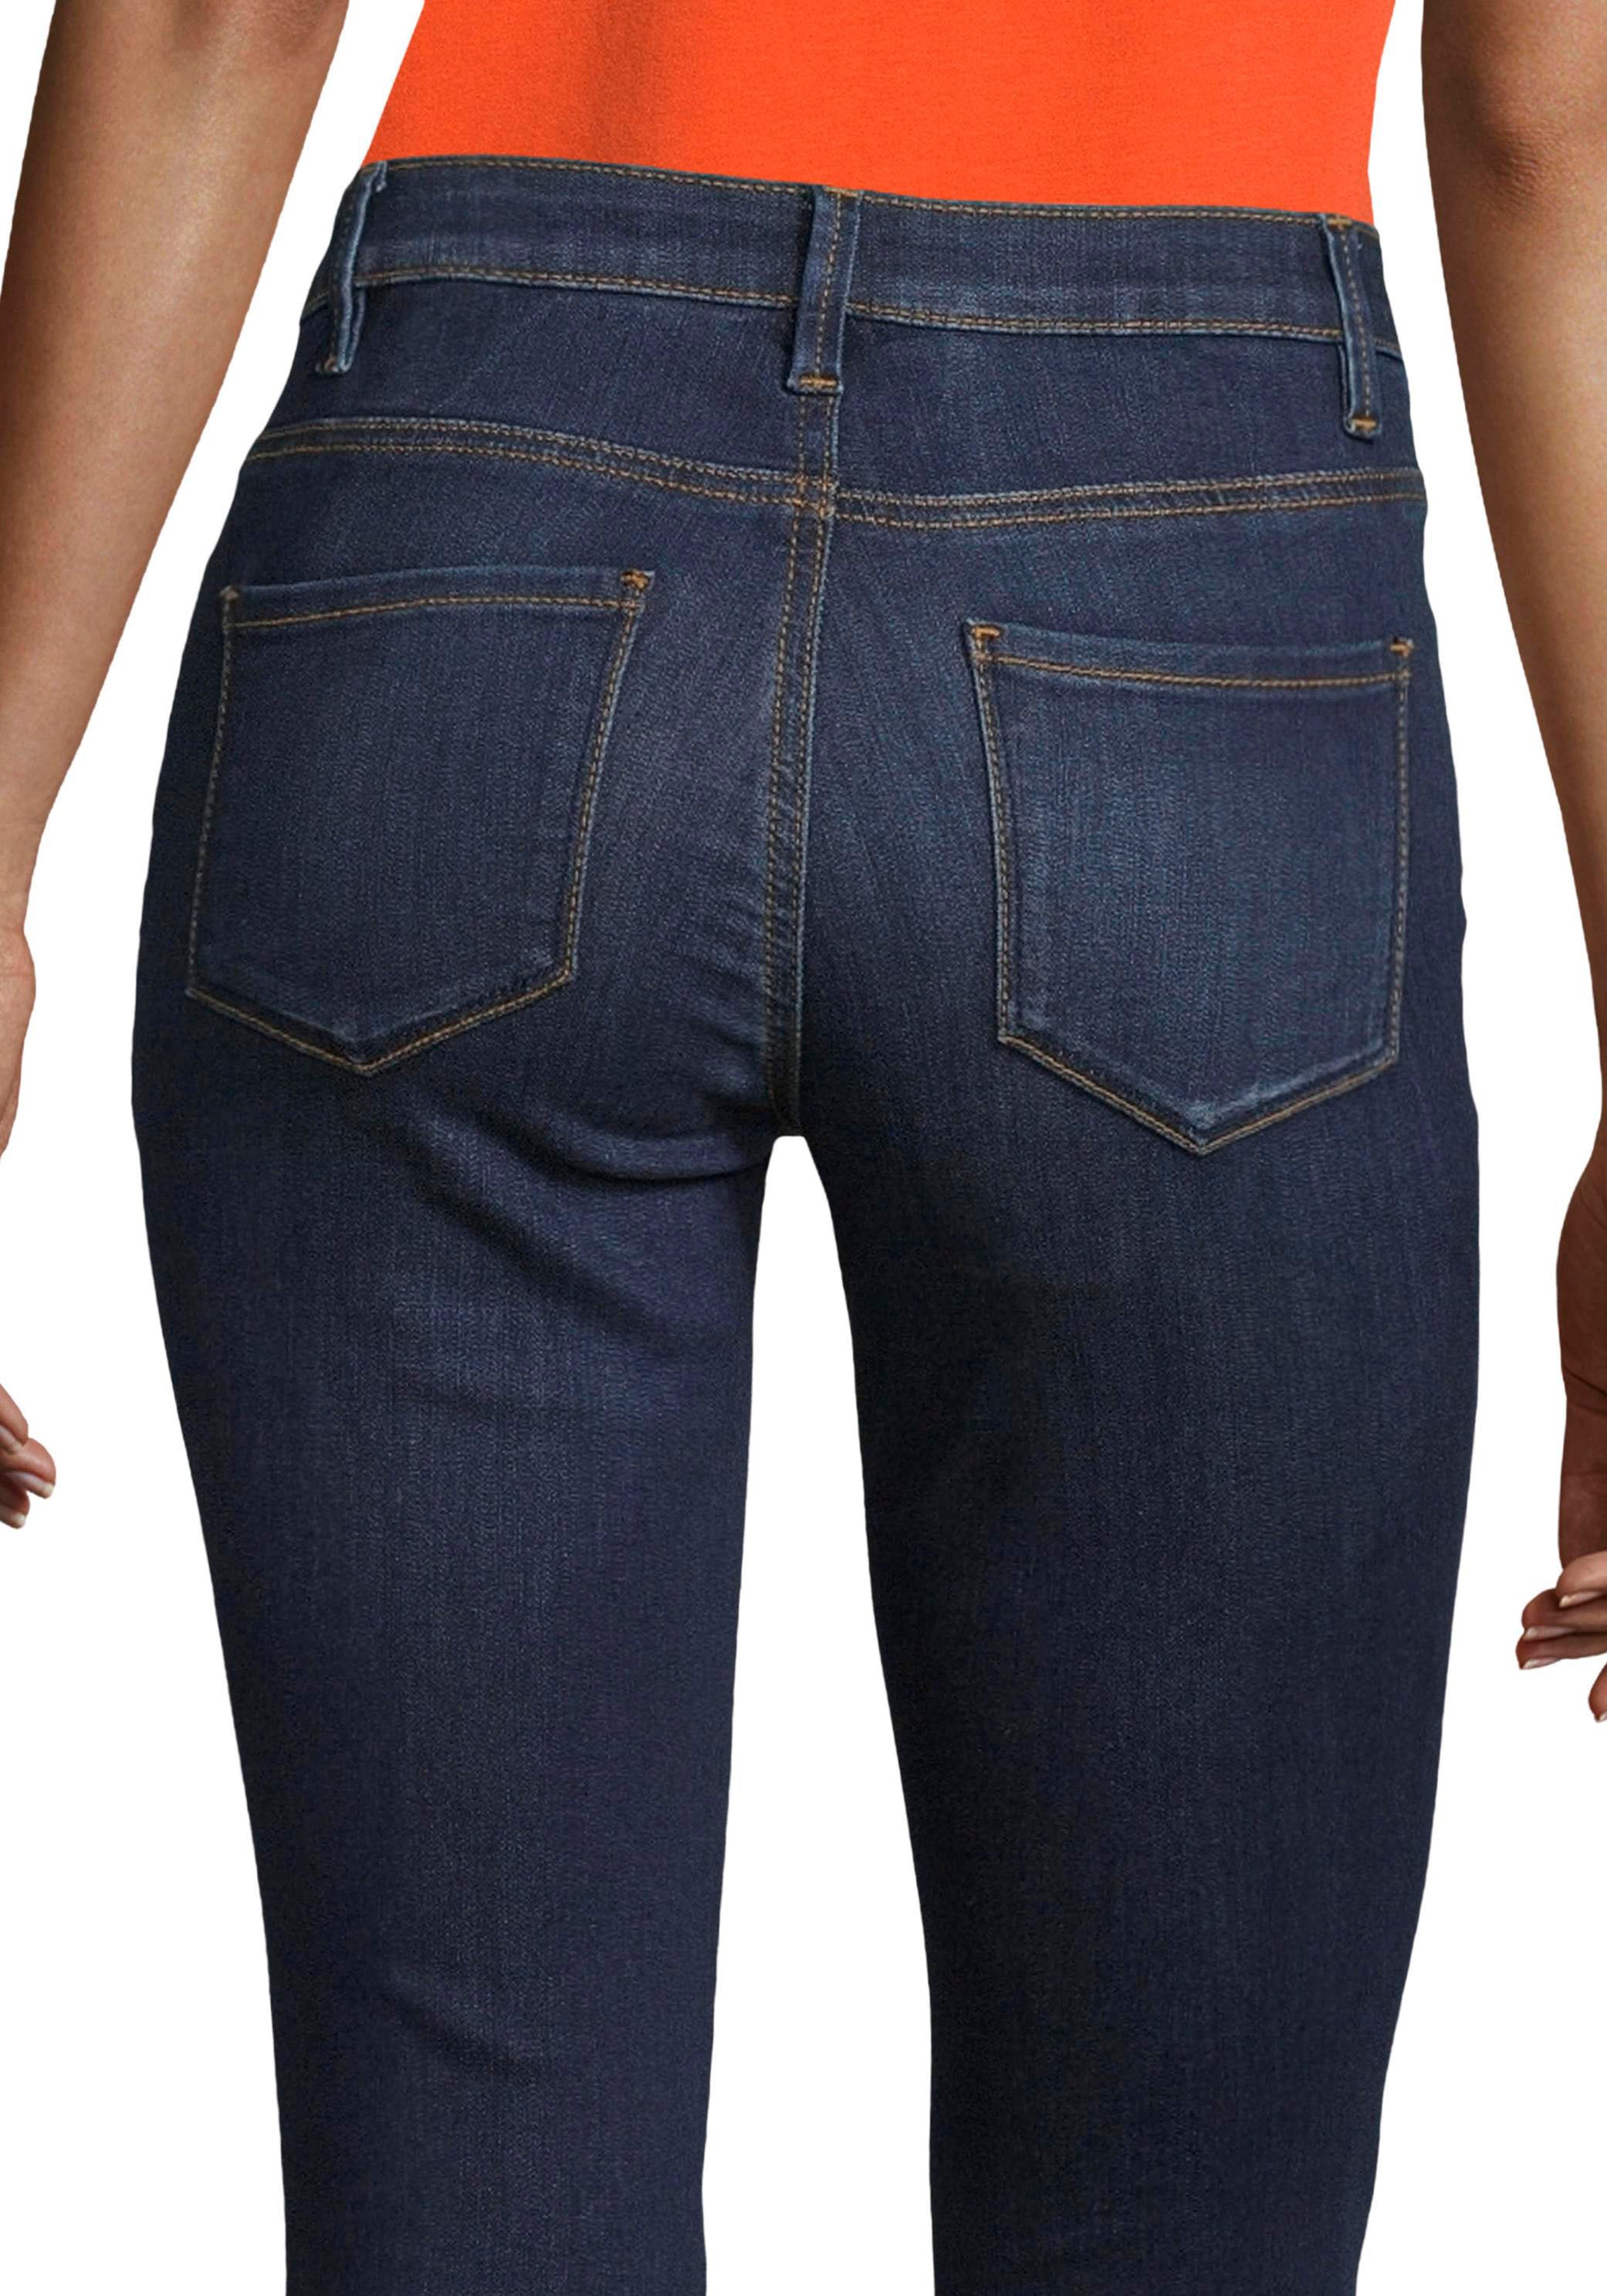 TAILOR TOM 5-Pocket-Form in günstig figurbetonter Skinny-fit-Jeans, kaufen